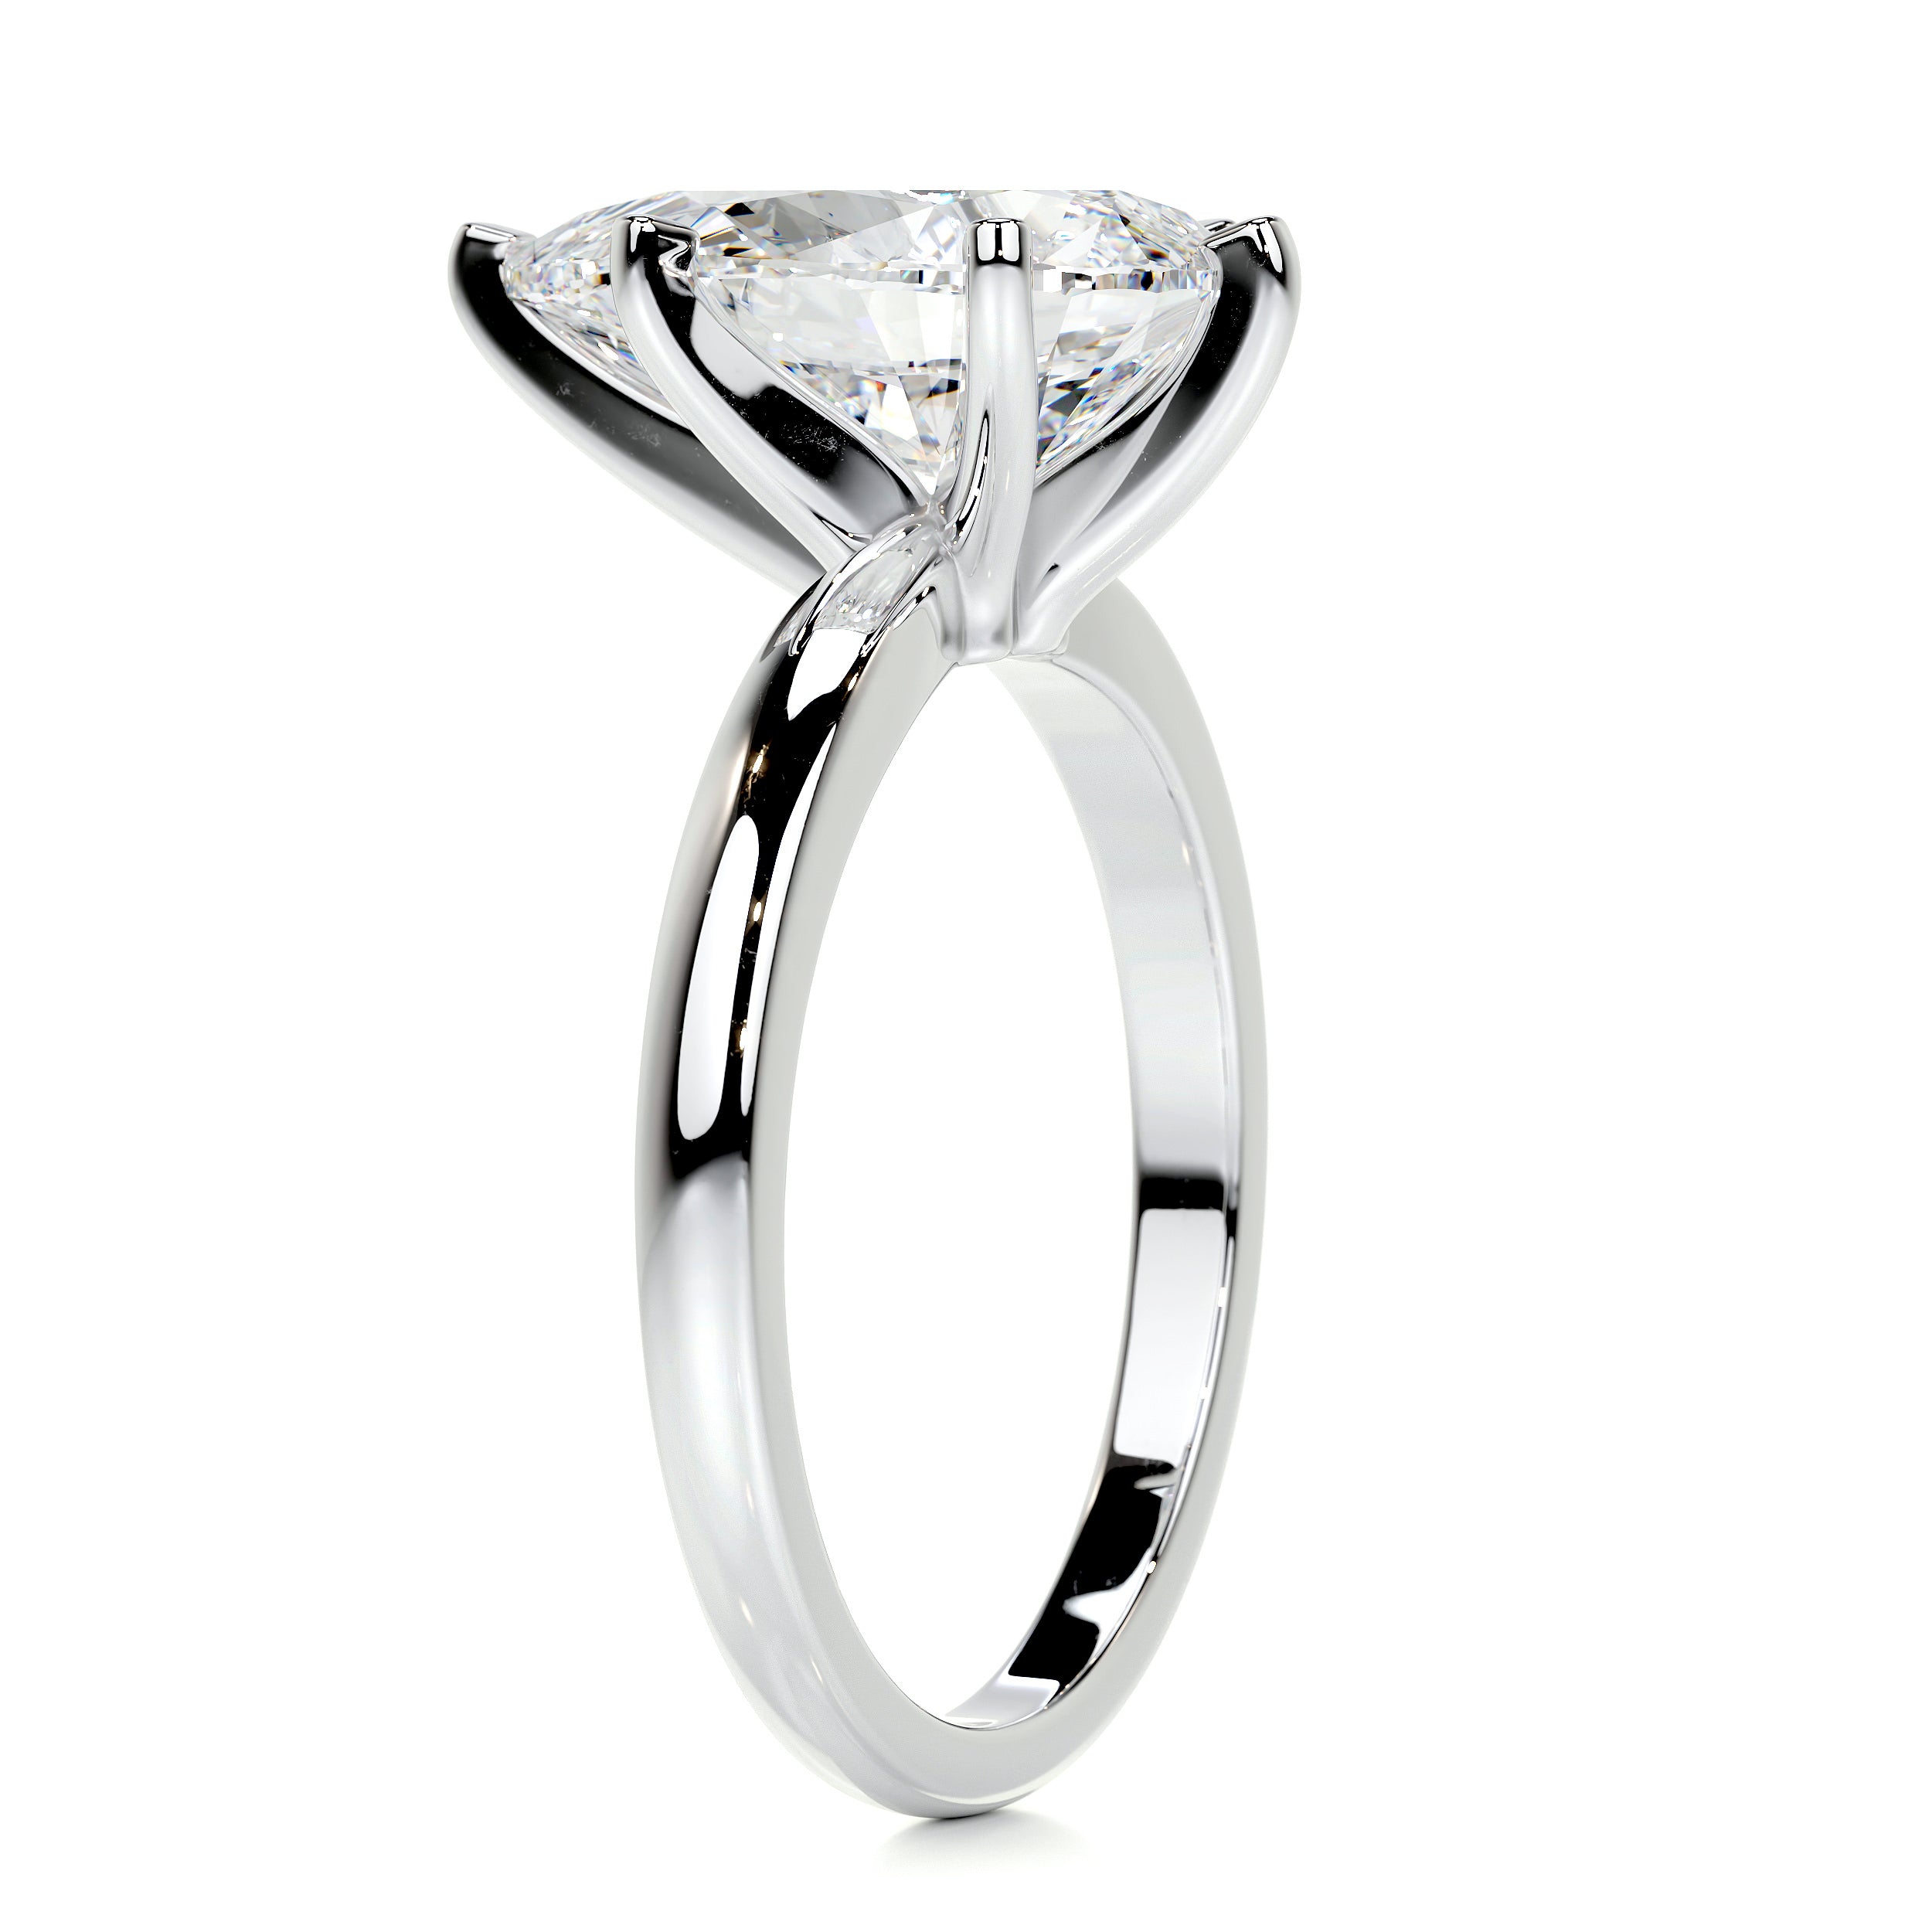 Adaline Diamond Engagement Ring   (1 Carat) -18K White Gold